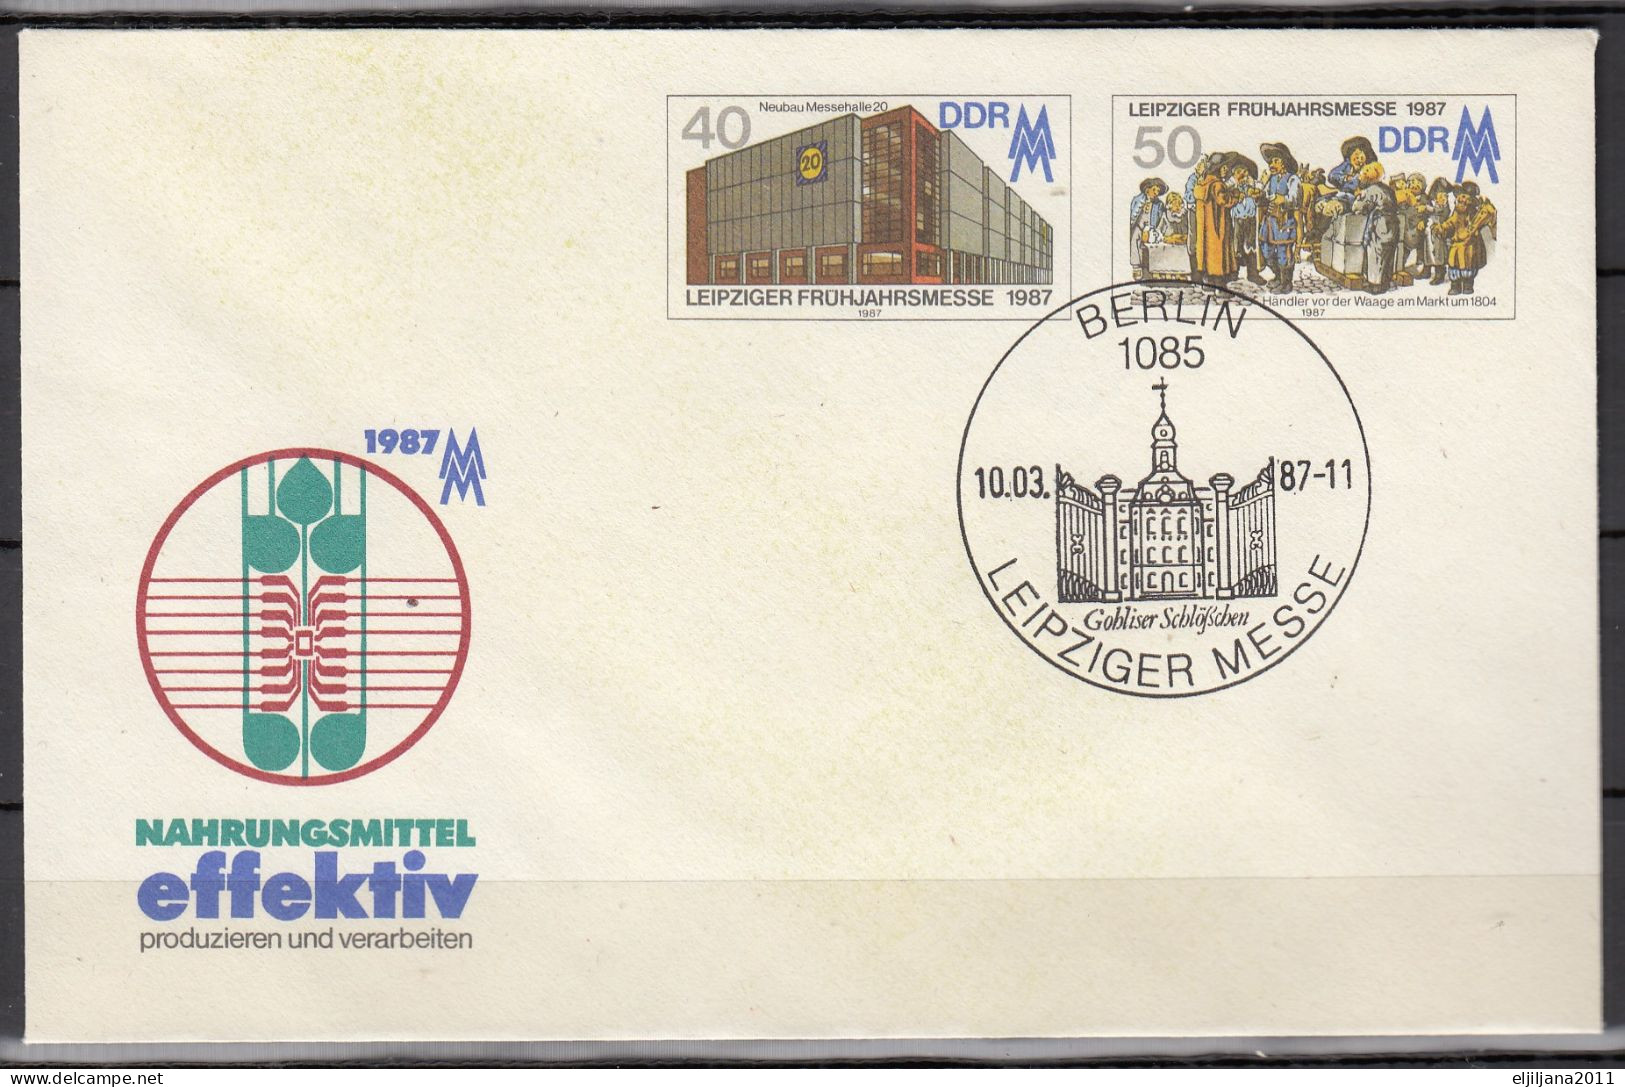 ⁕ Germany DDR 1987 ⁕ "effektiv" - Leipziger Frühjahrsmesse / Postal Stationery ⁕ 2v Unused Cover - Enveloppes - Neuves